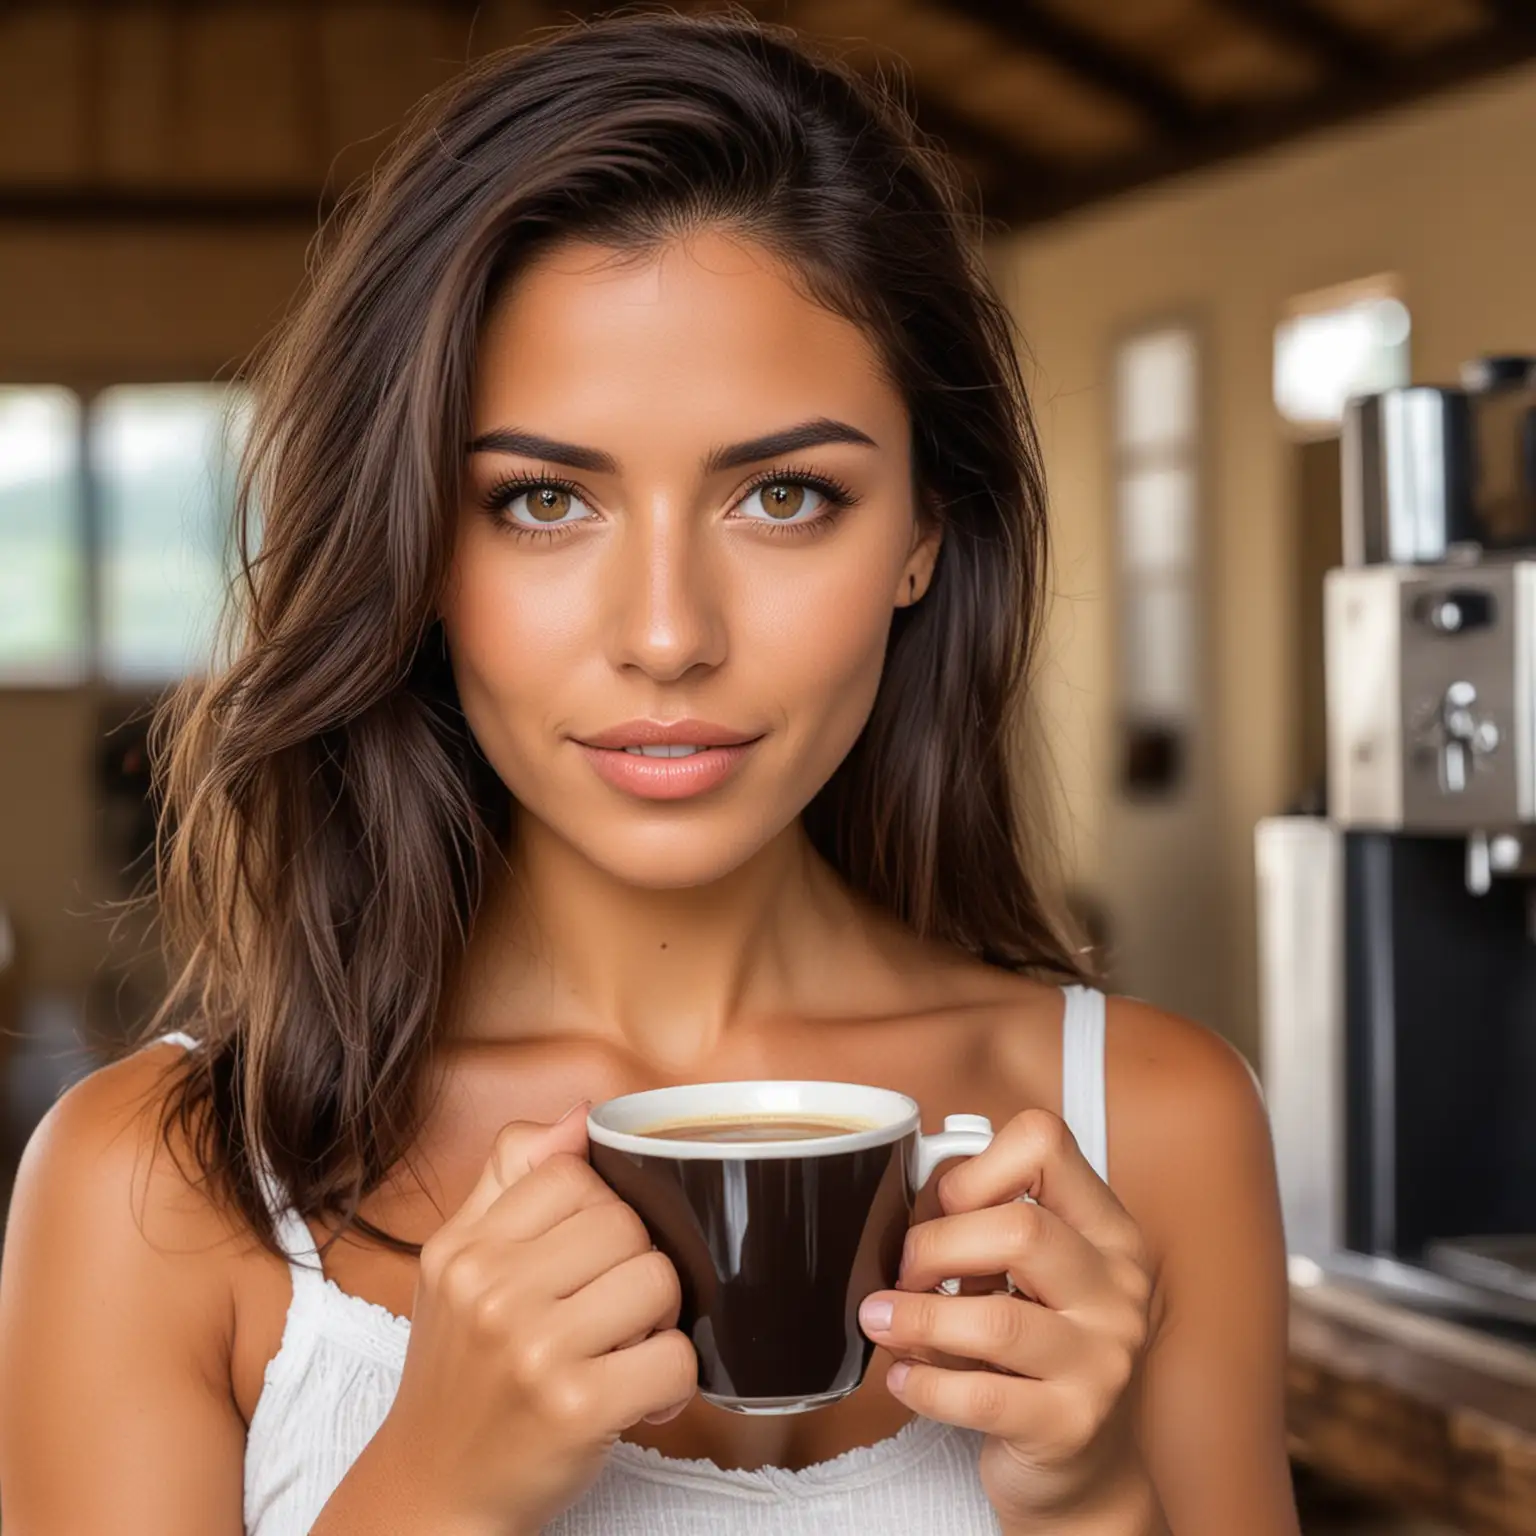 Hermosa y sexi mujer colombiana de ojos claros y piel trigueña. Muestrala en una finca con una taza de café en su mano y una máquina profesional italiana de café en el fondo.